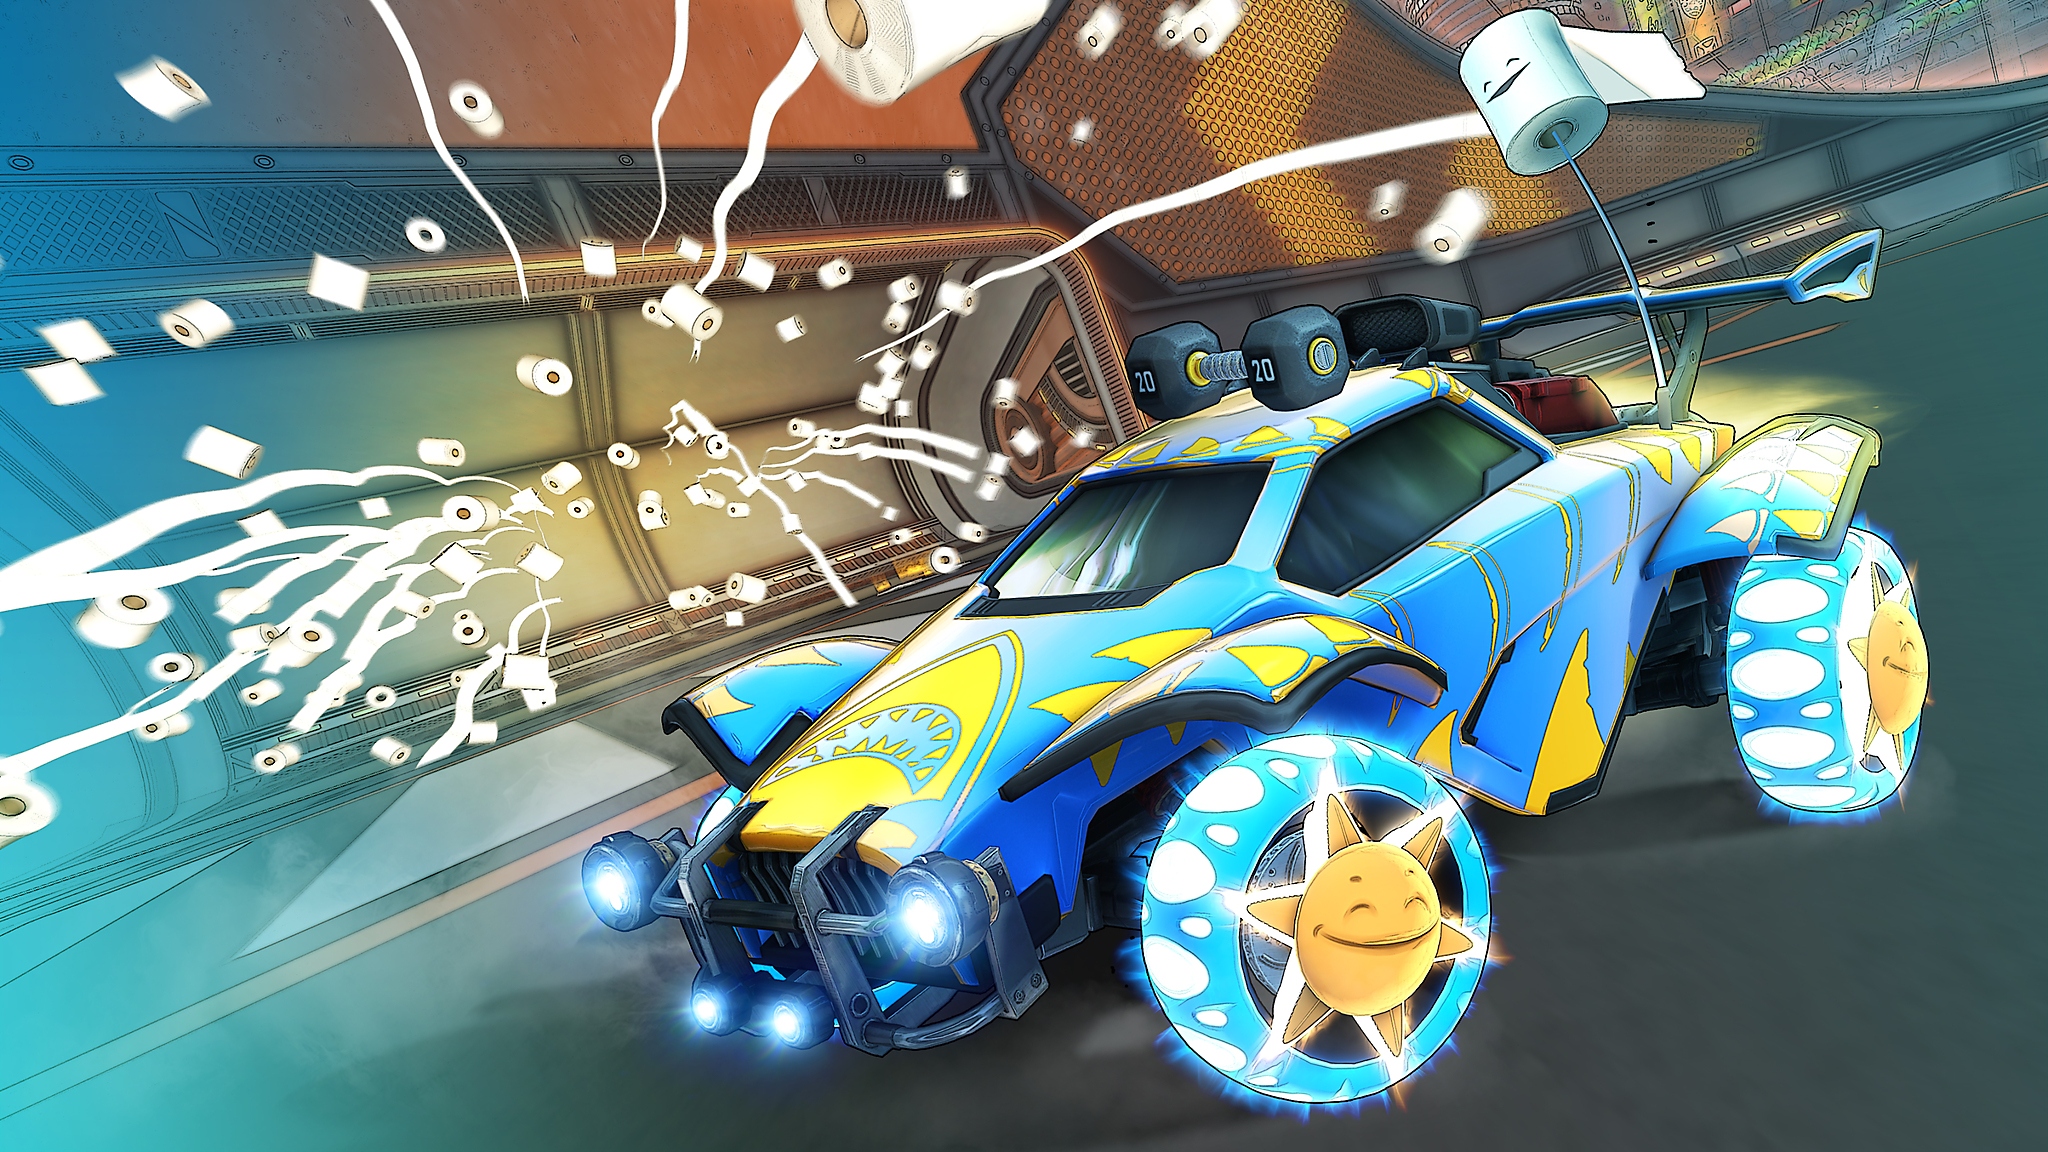 《火箭联盟》- 第6赛季截屏展示蓝黄色赛车和漫天飞舞的卷纸